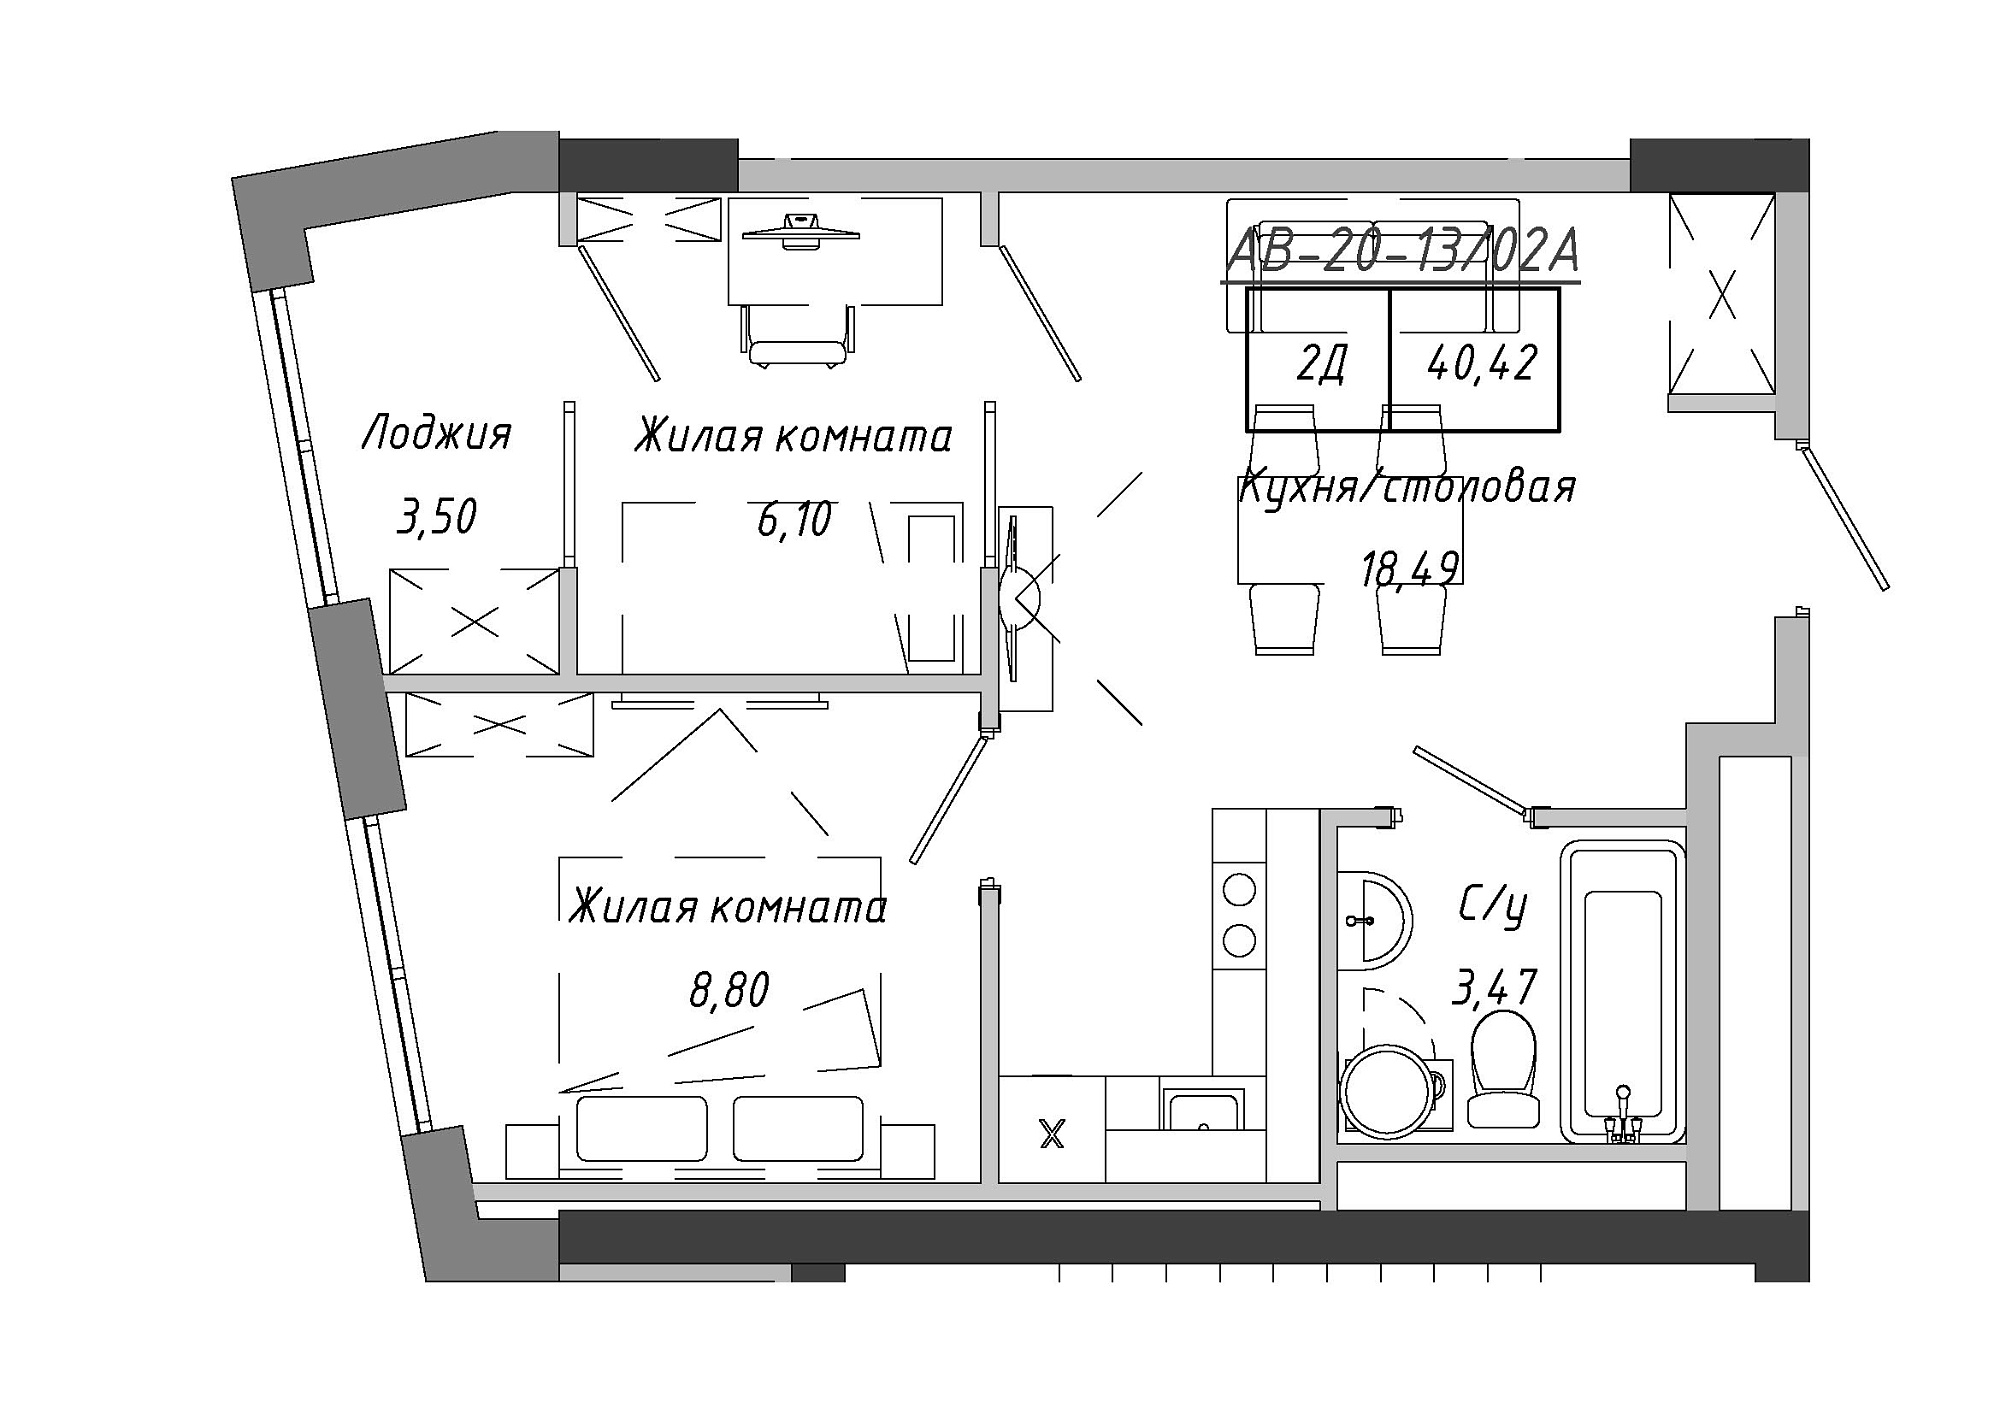 Планировка 2-к квартира площей 40.42м2, AB-20-13/0102a.